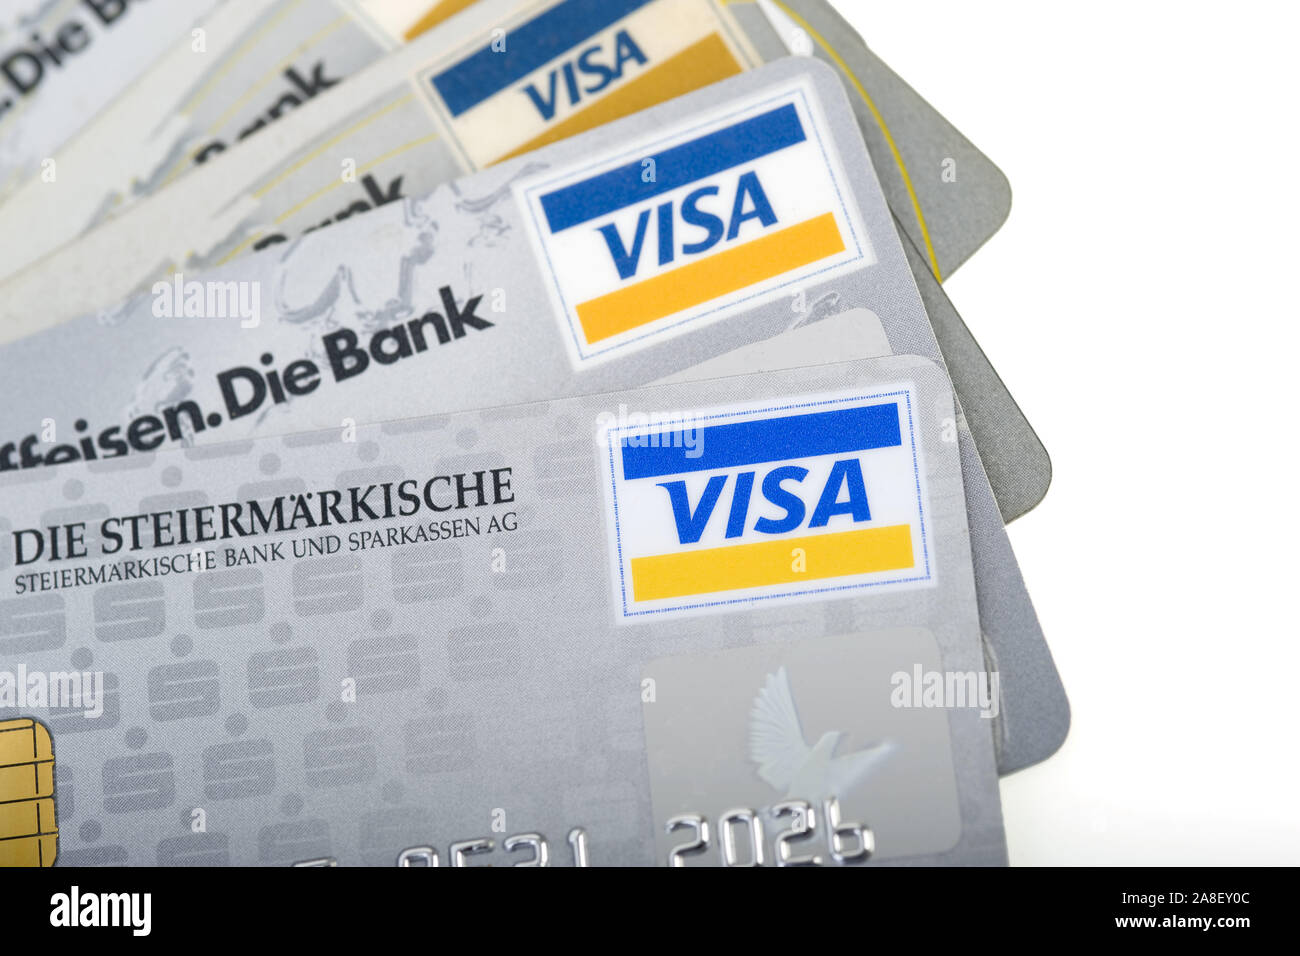 Visa Card, Visa Cards, Karten Kreditkarten, Visa, Stock Photo